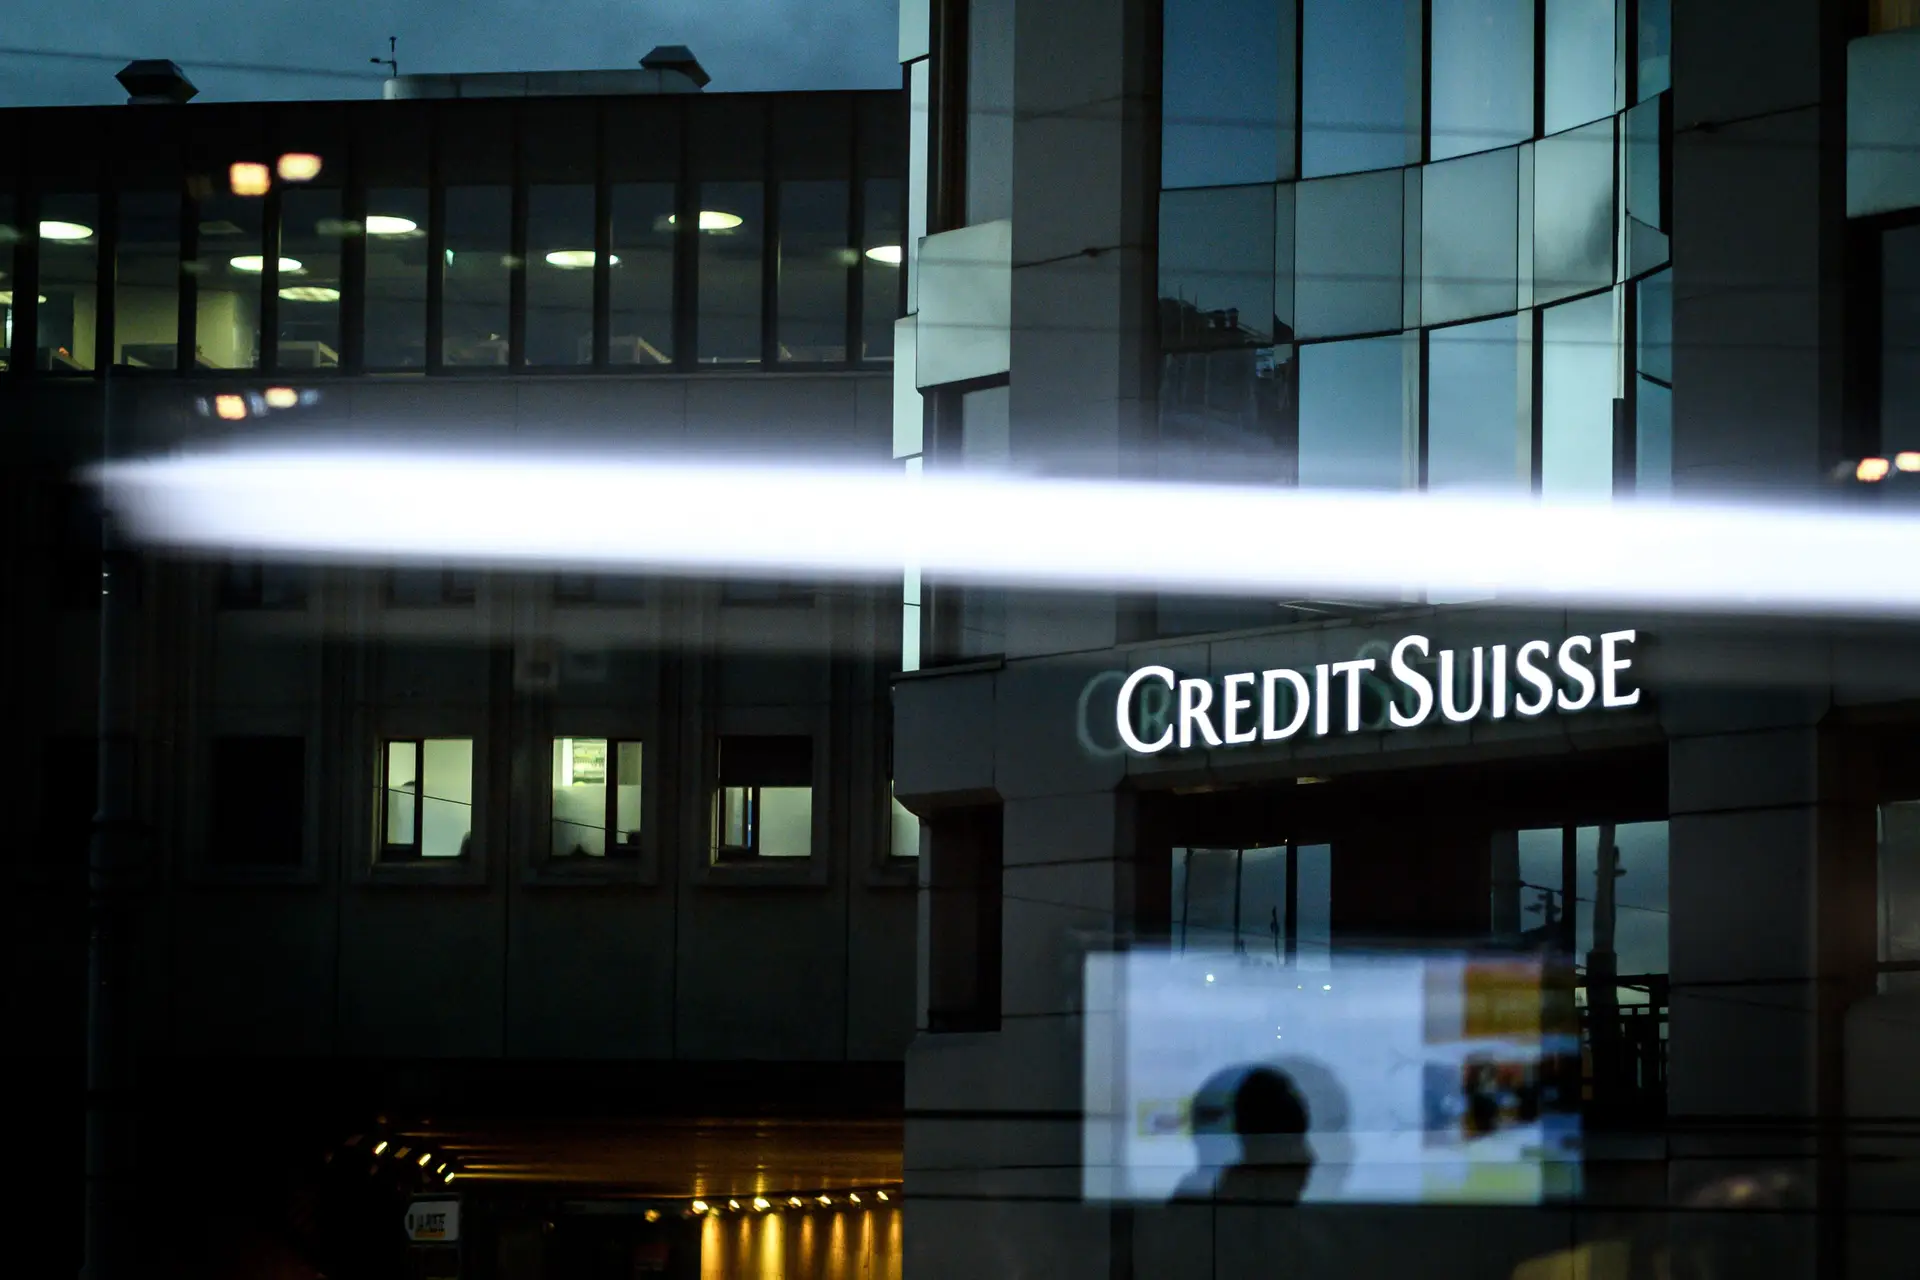 Credit Suisse sonda investidores para aumento de capital. Ações atingem mínimo histórico